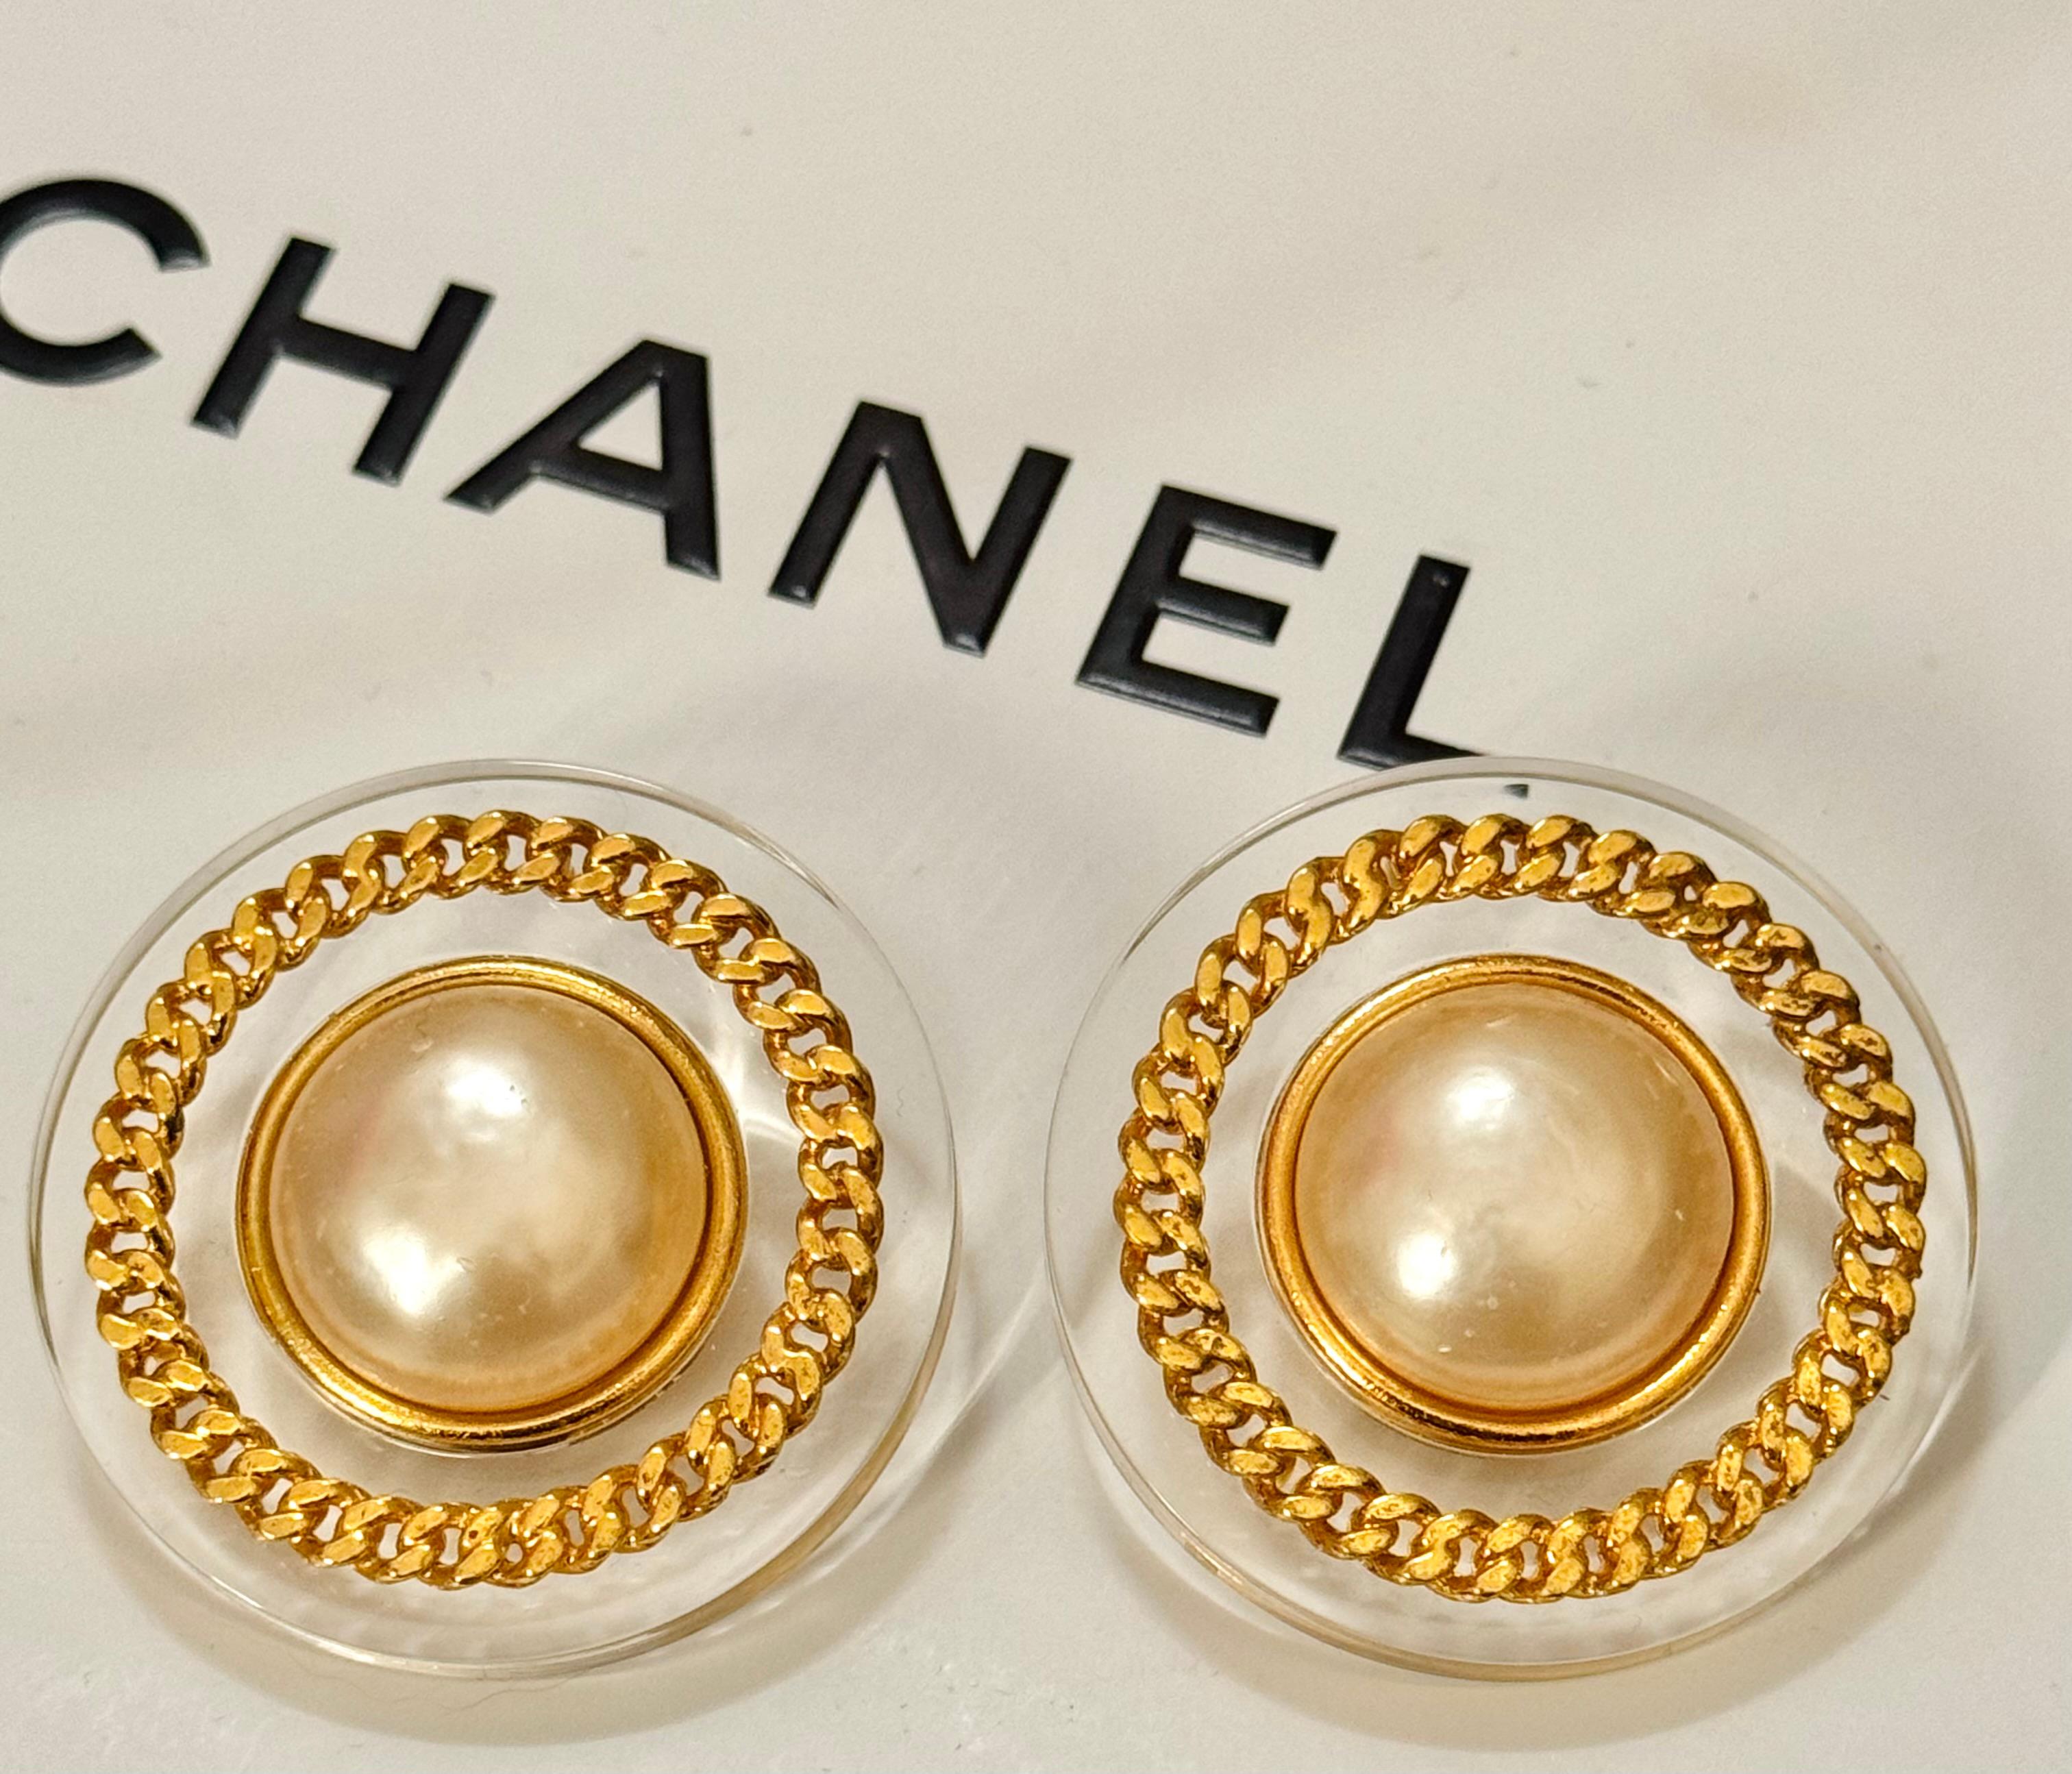 Chanel 1992 (Saison 28 von Victoire de Castellane) große Gripoix Glasperle und Lucite 24k vergoldet Clip auf Ohrringe, 1,6 x 1,6 Zoll, sehr guter Zustand 